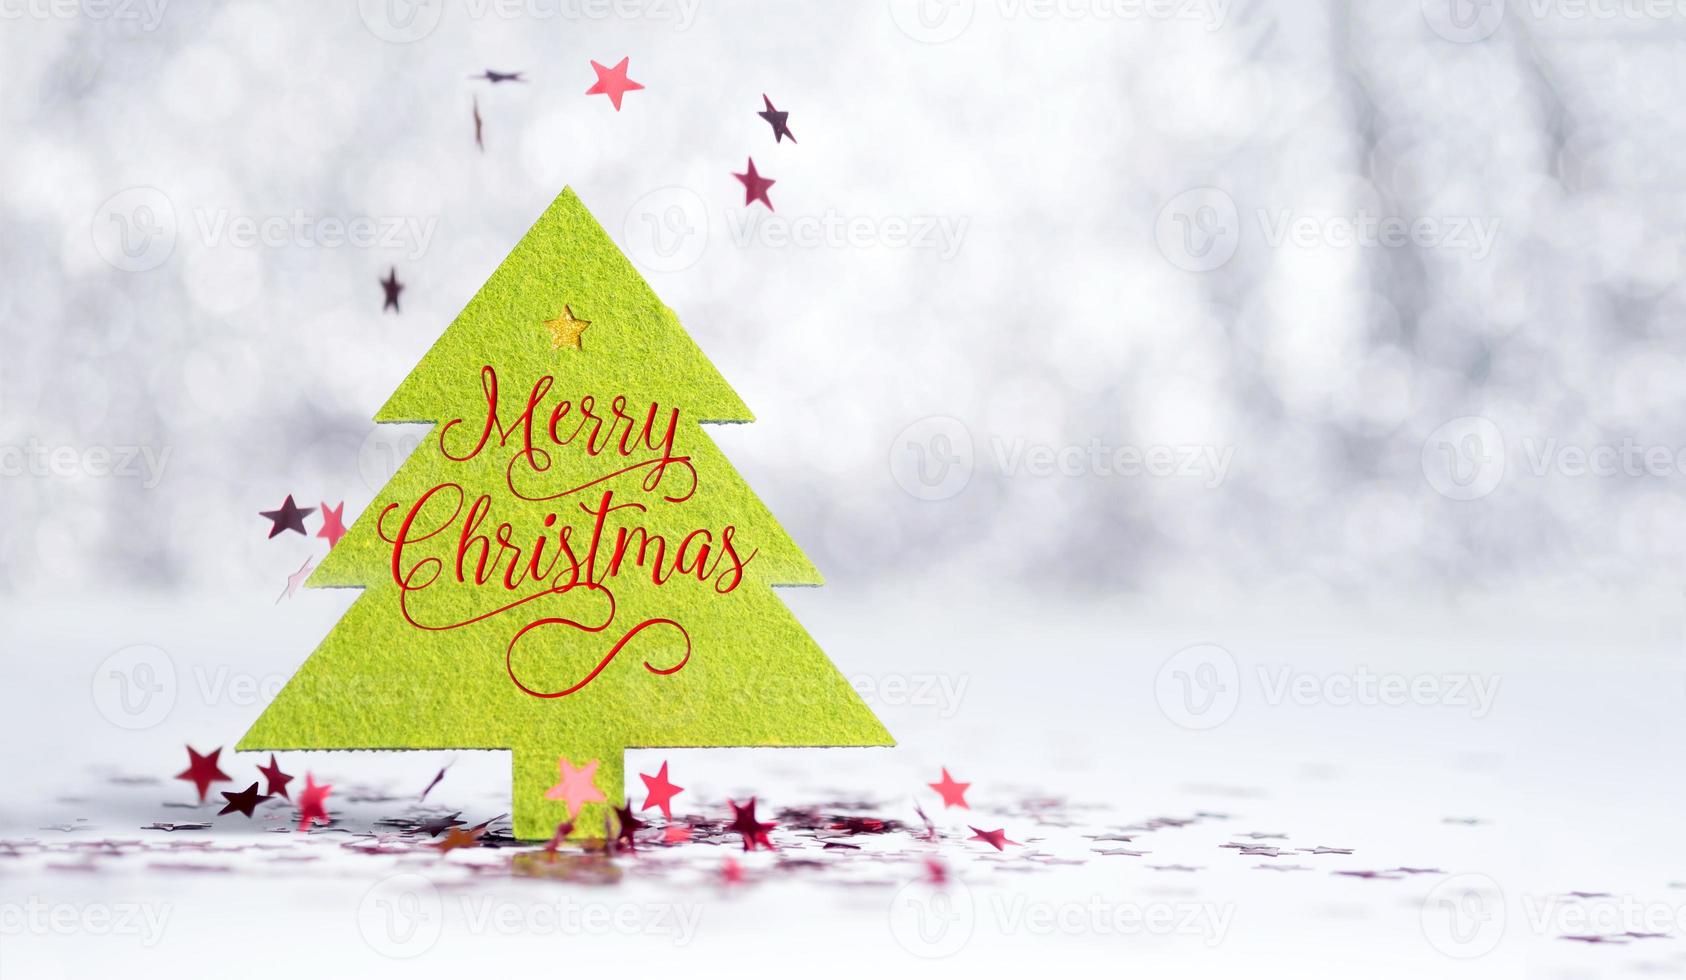 Nahaufnahme Frohe Weihnachten Wort auf grünem Weihnachtsbaum mit funkelnden roten Stern foto